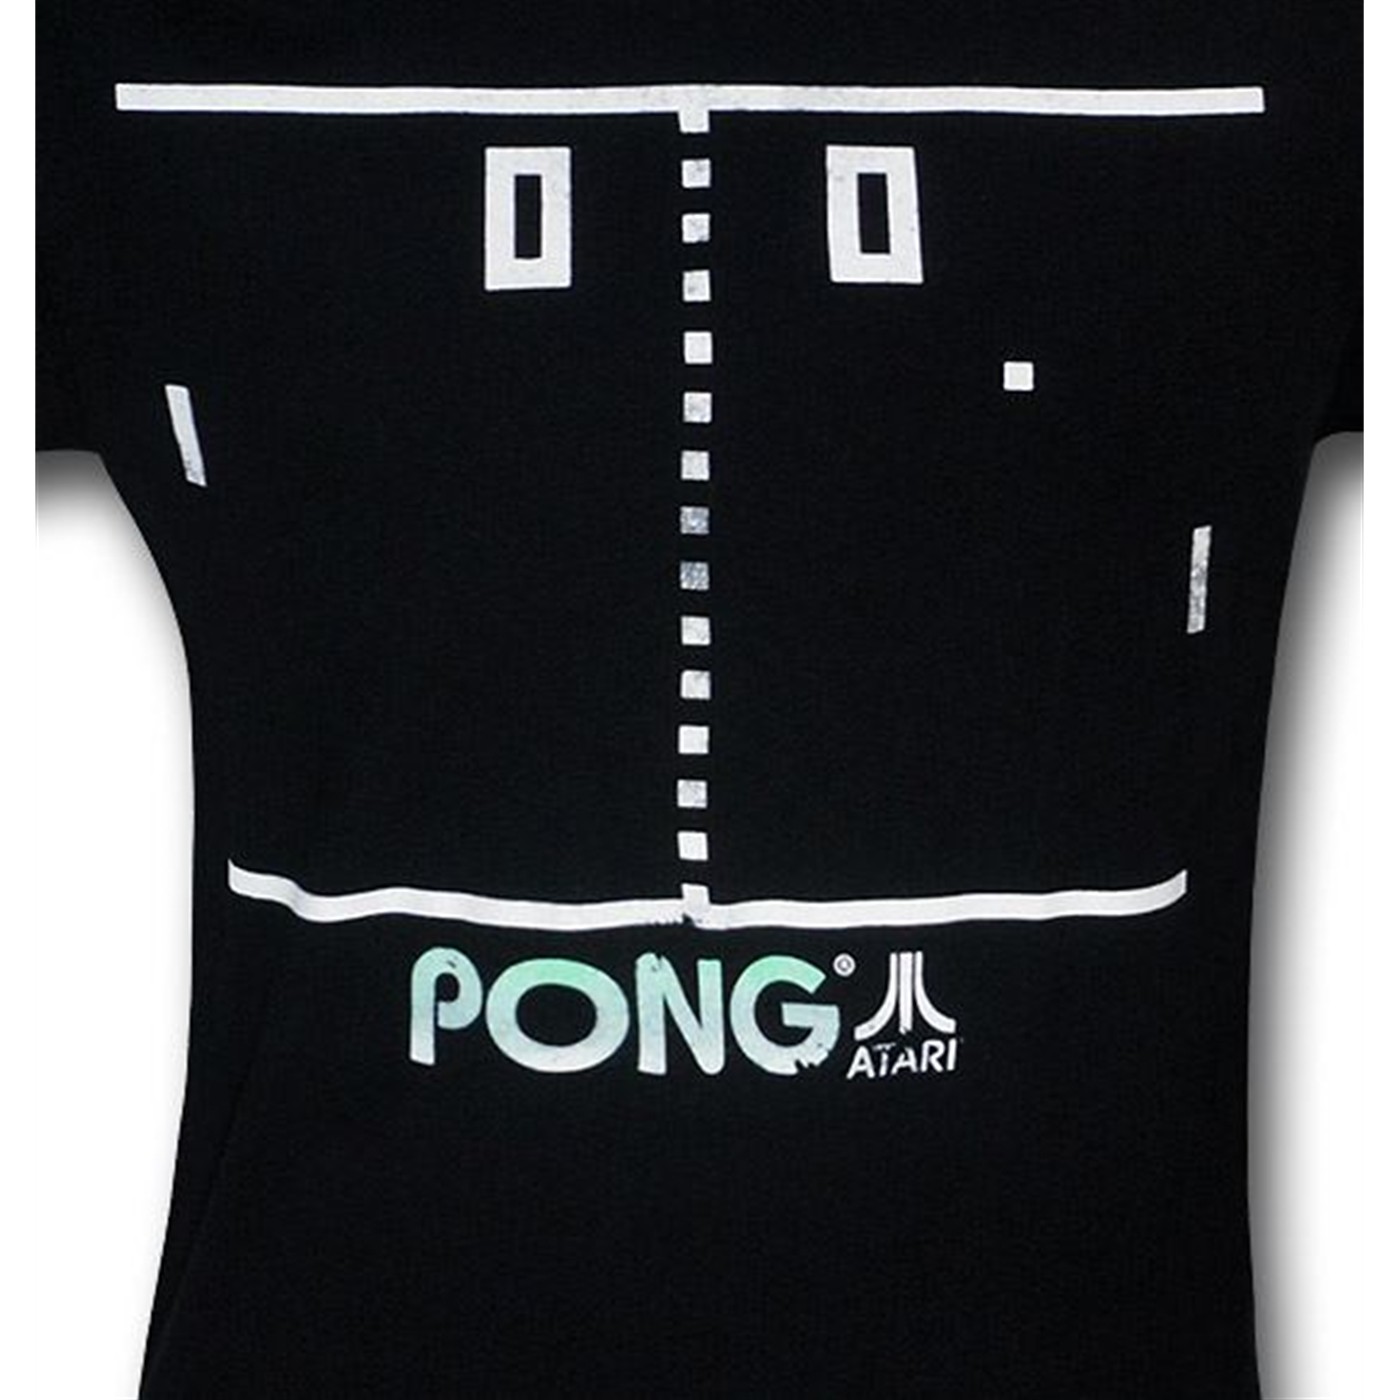 Pong Screen Shot T-Shirt